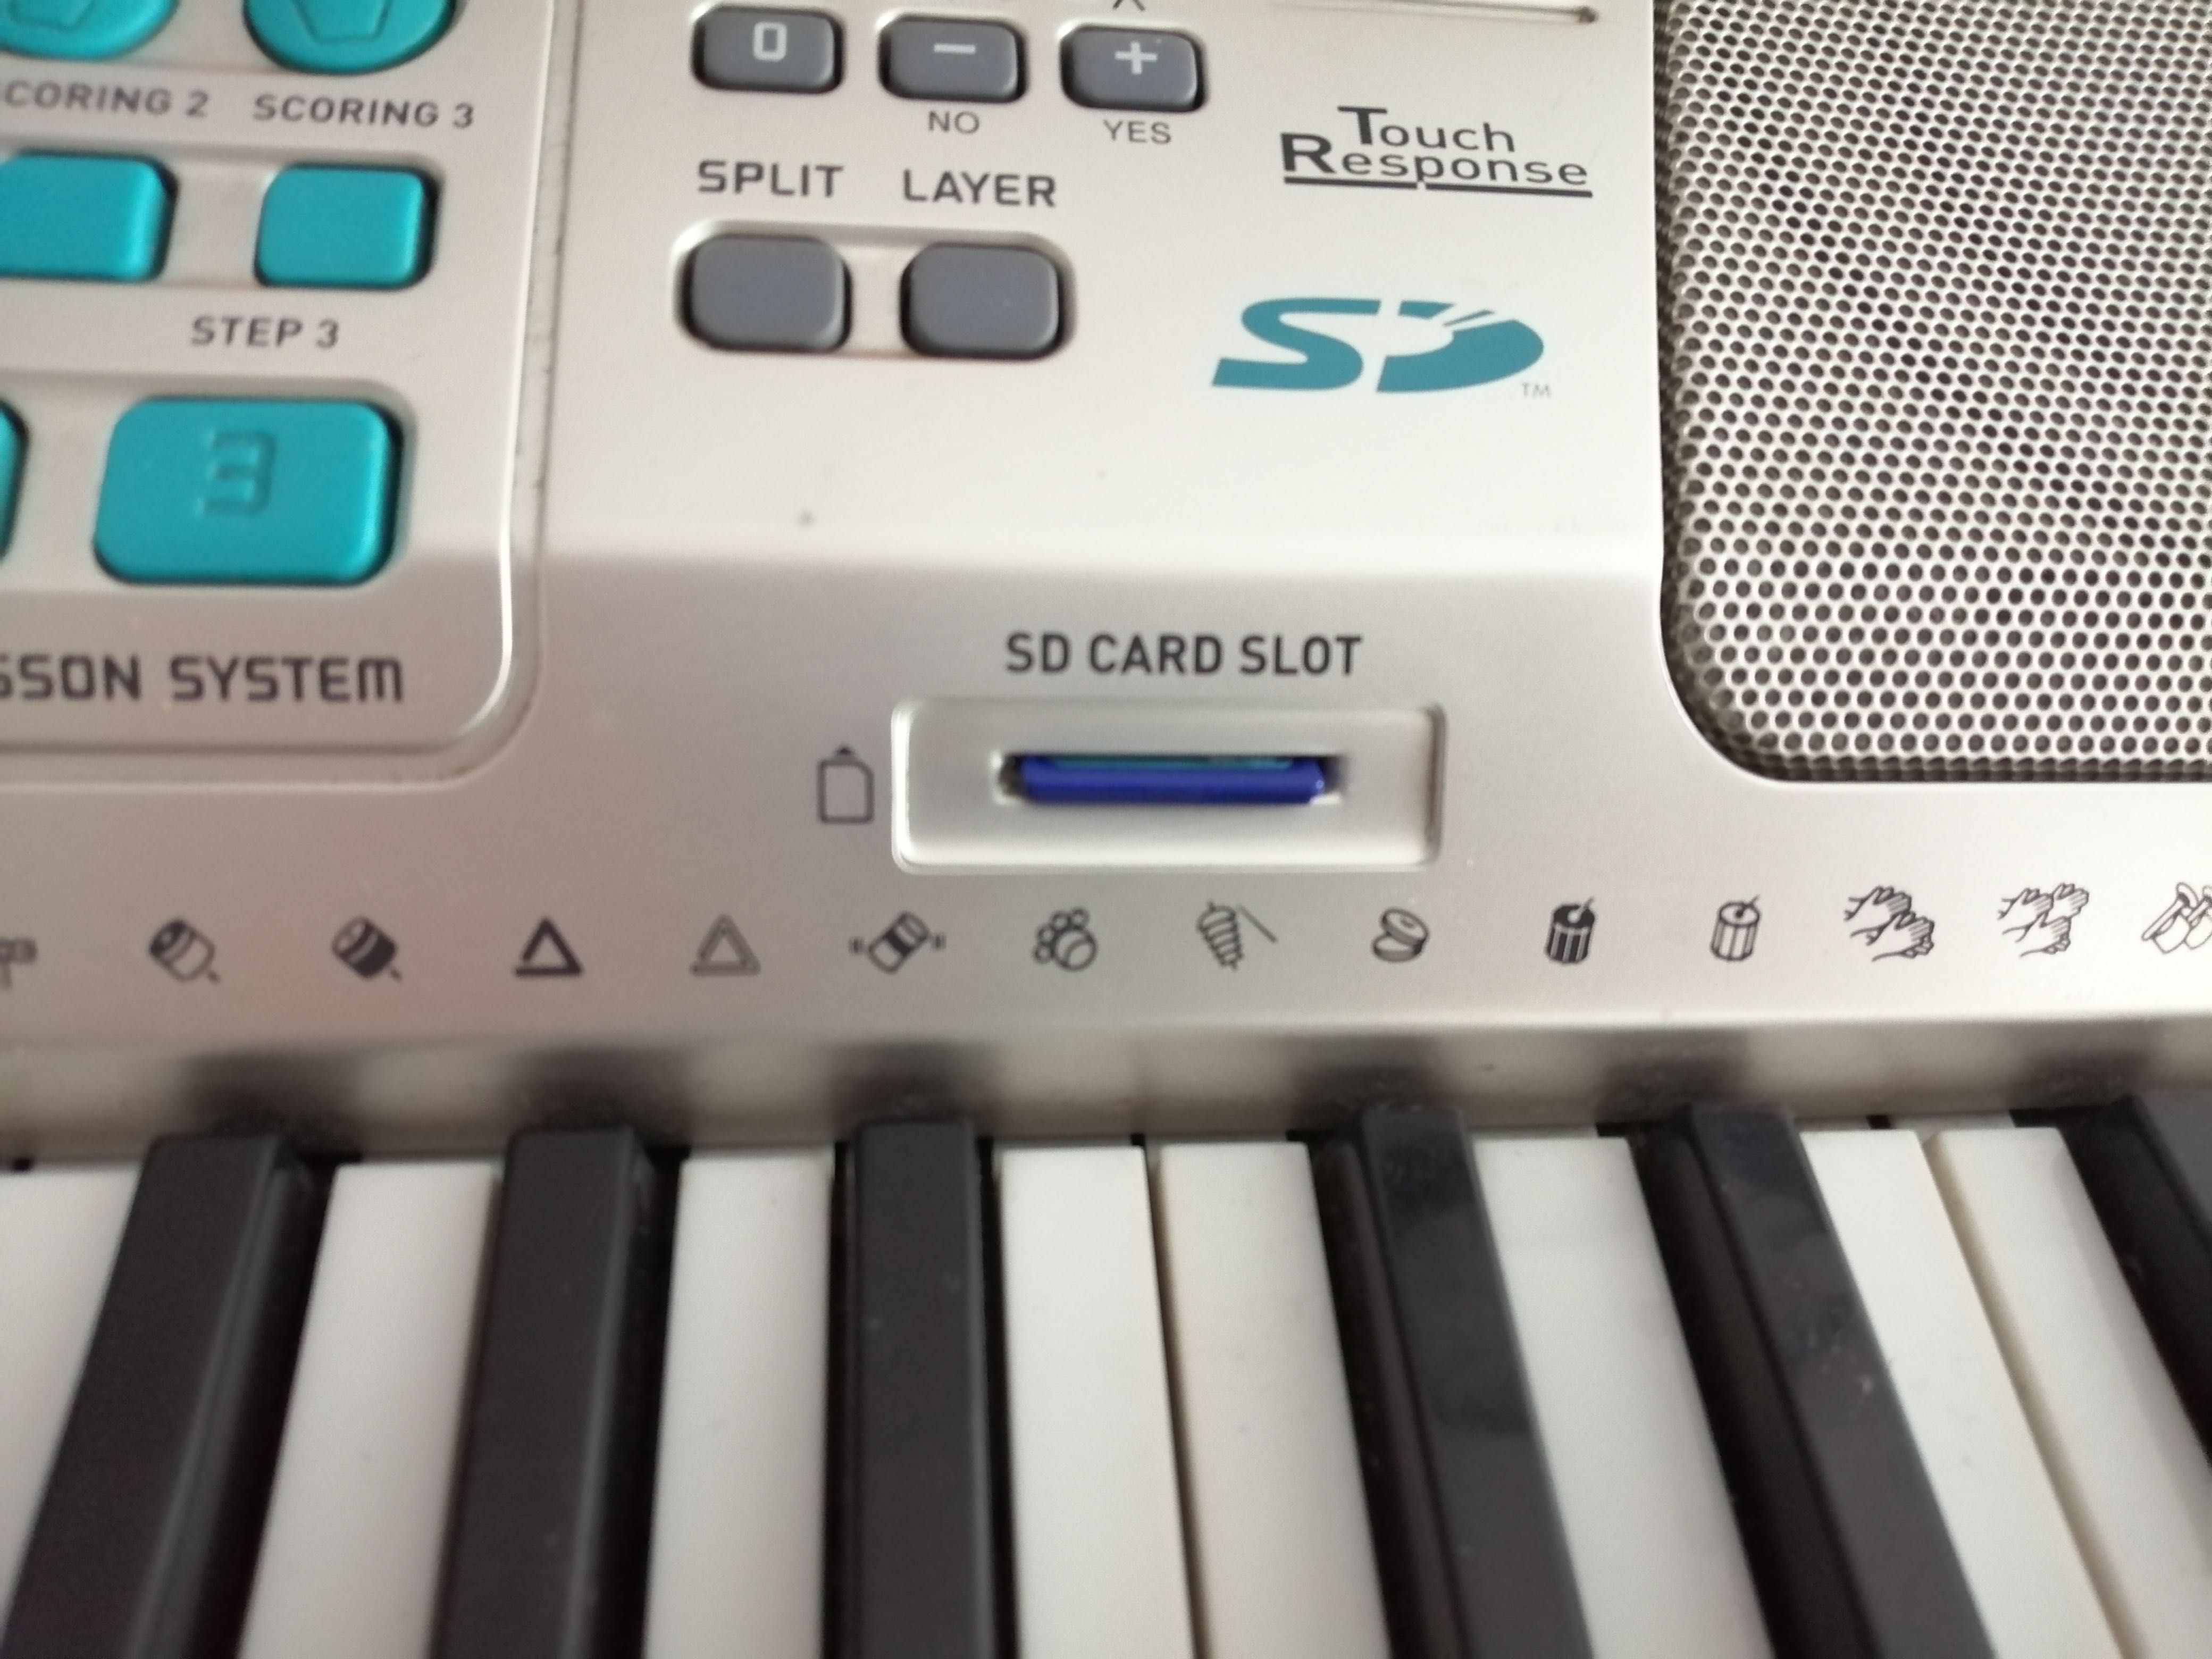 Casio z podświetlaną klawiaturą karta pamięci mikrofon MIDI USB